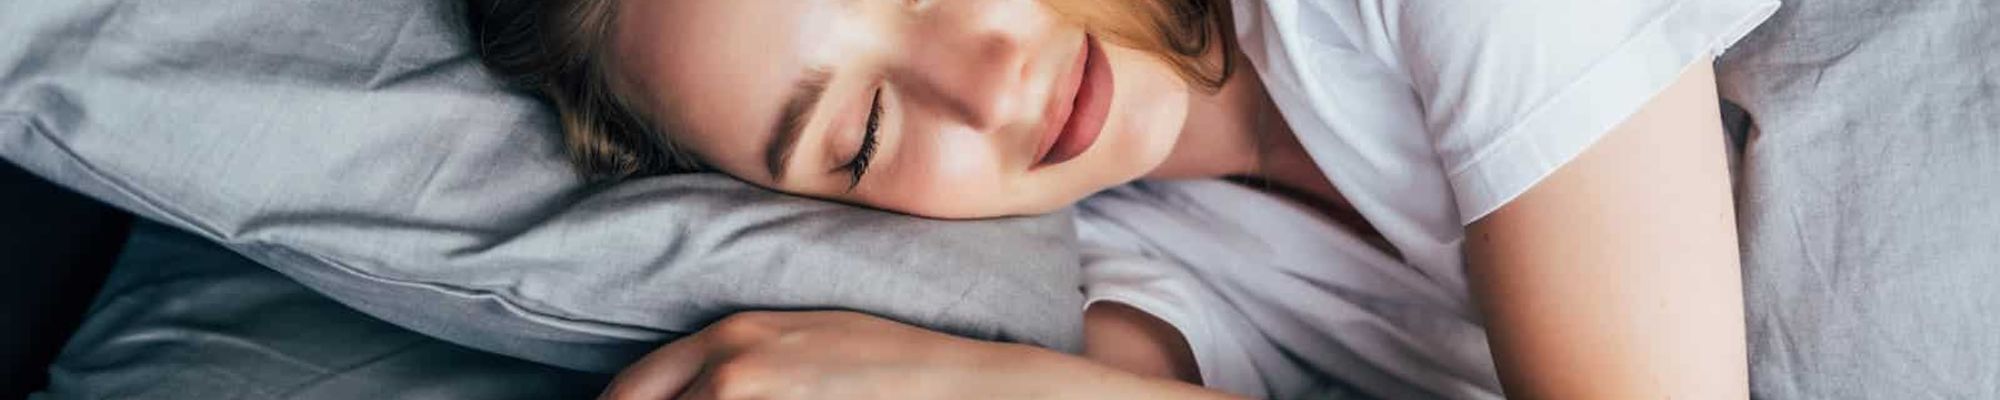 Keď budeš dbať na spánok celý týždeň, dajú sa dokopy negatíva spojené s dlhodobo krátkou dobou spánku?